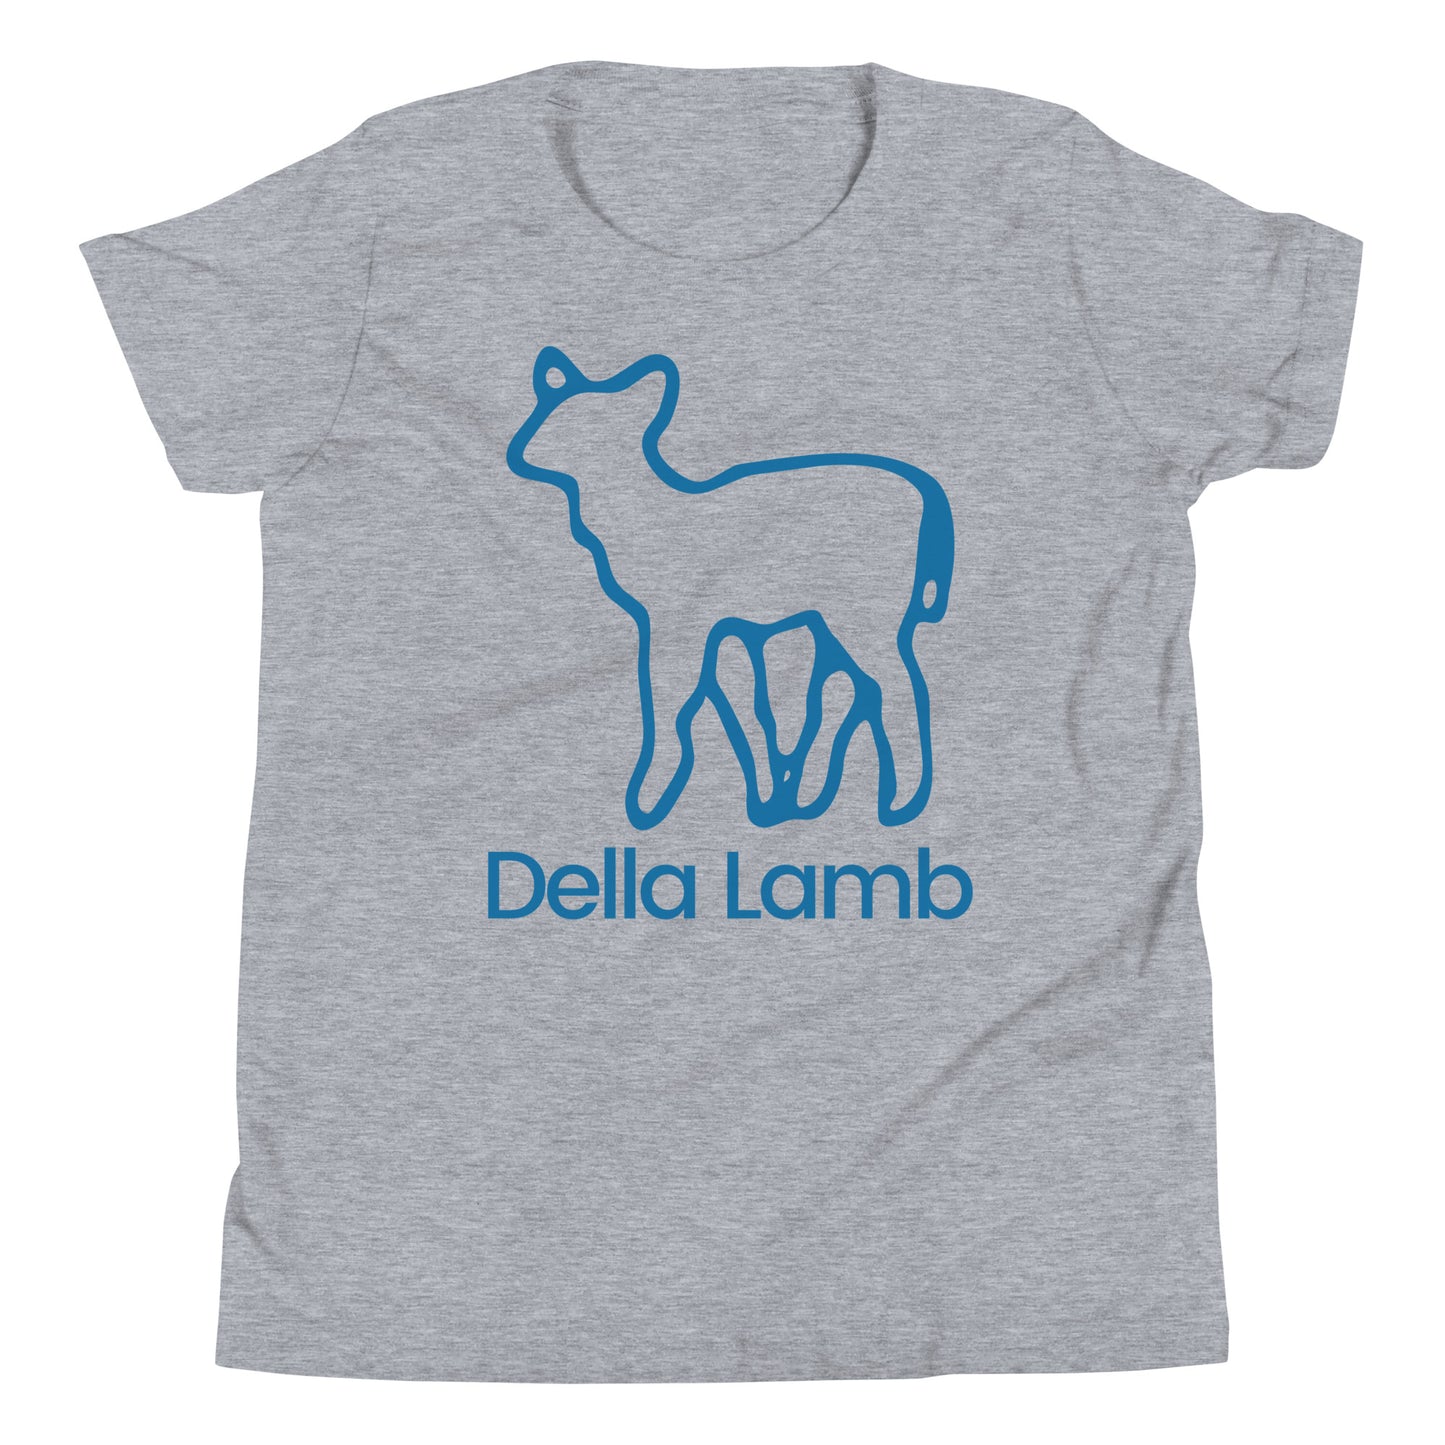 Della Lamb Youth T-Shirt